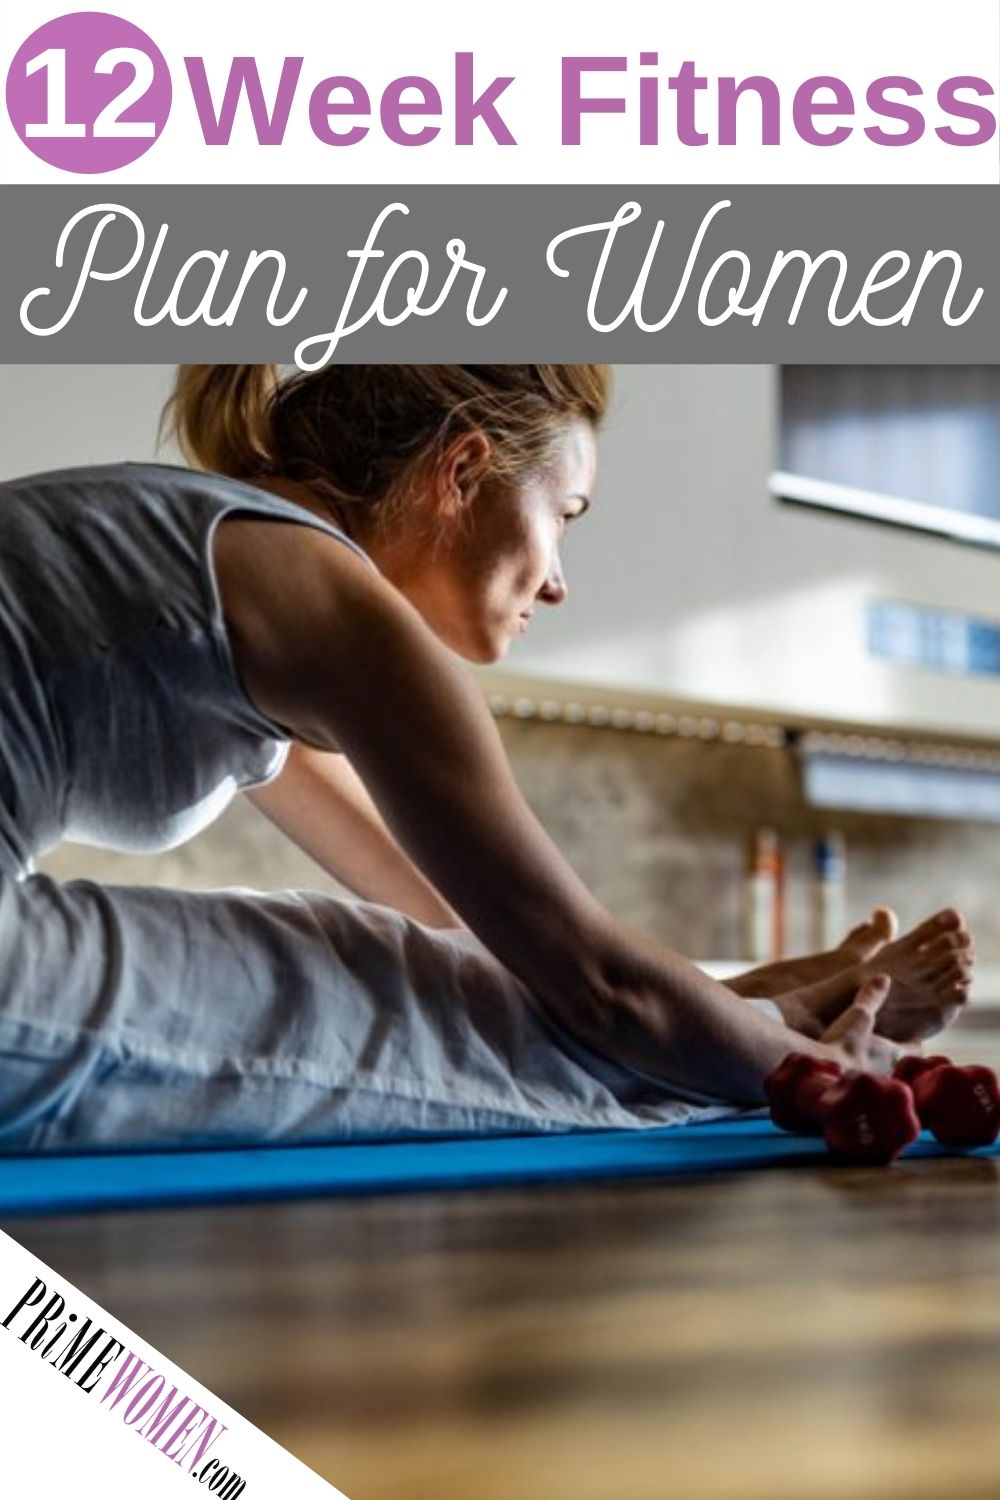 12 Week Fitness Plan for Women